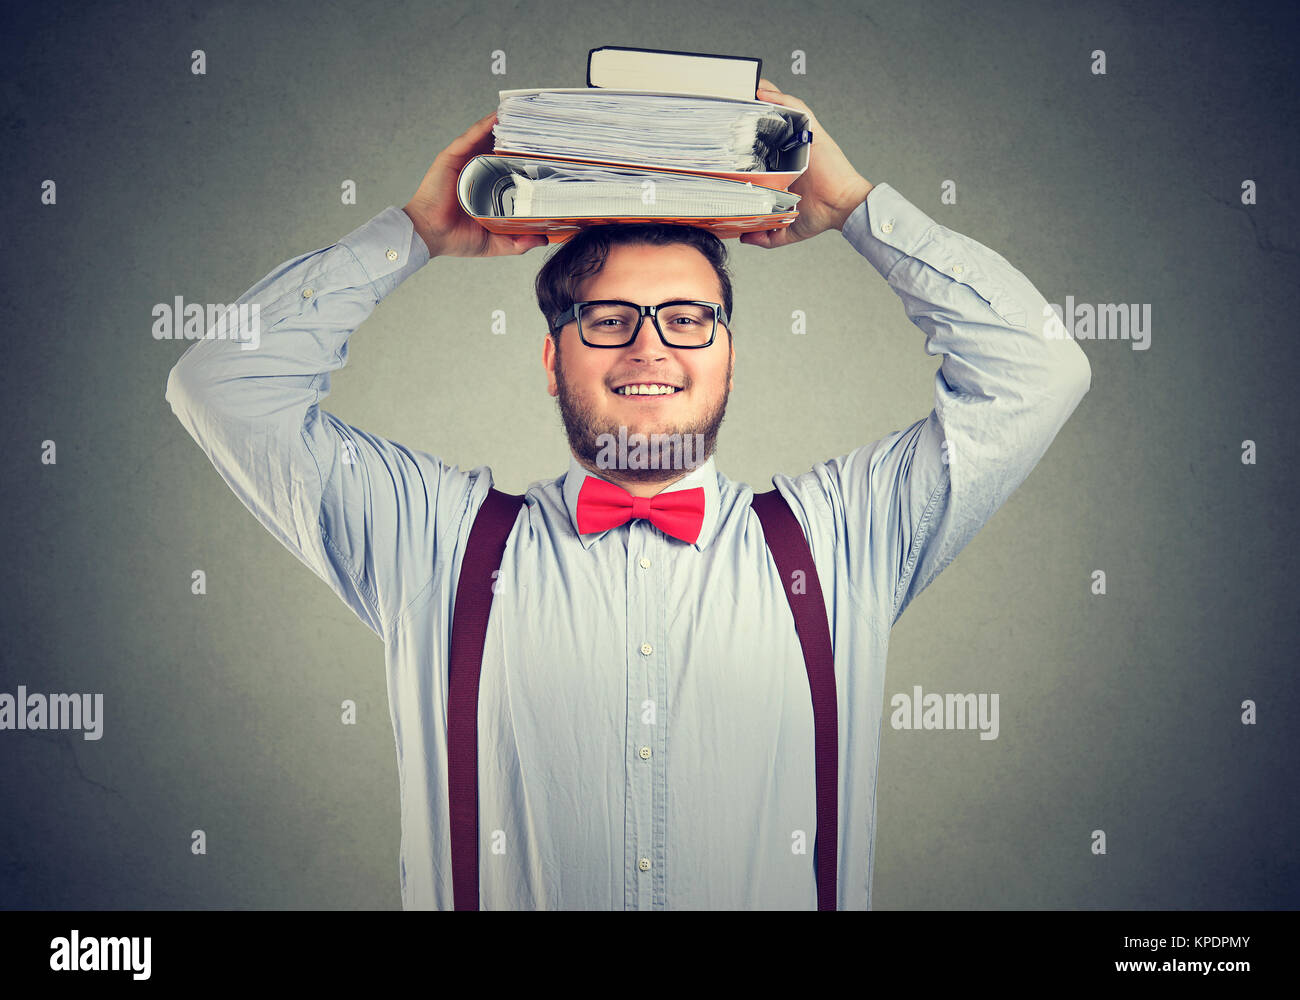 Chubby junger Mann in formelle Kleidung holding Haufen Lehrbücher auf den Kopf in die Kamera lächelt. Stockfoto